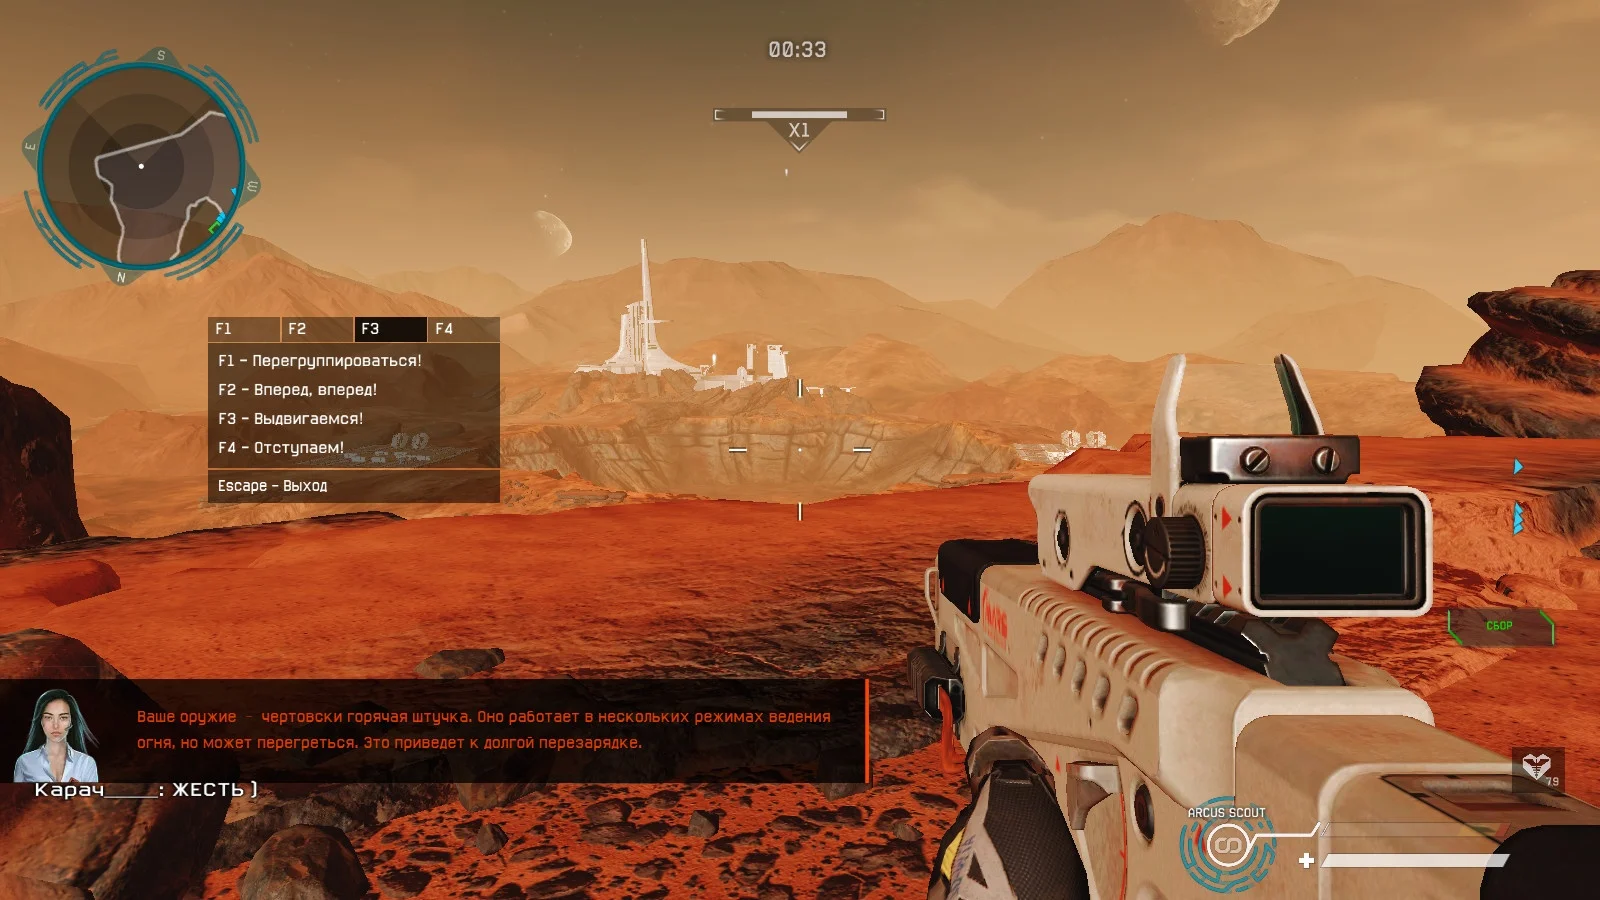 Обзор спецоперации «Марс» в Warface. Далеко ли до Красной планеты? - фото 2